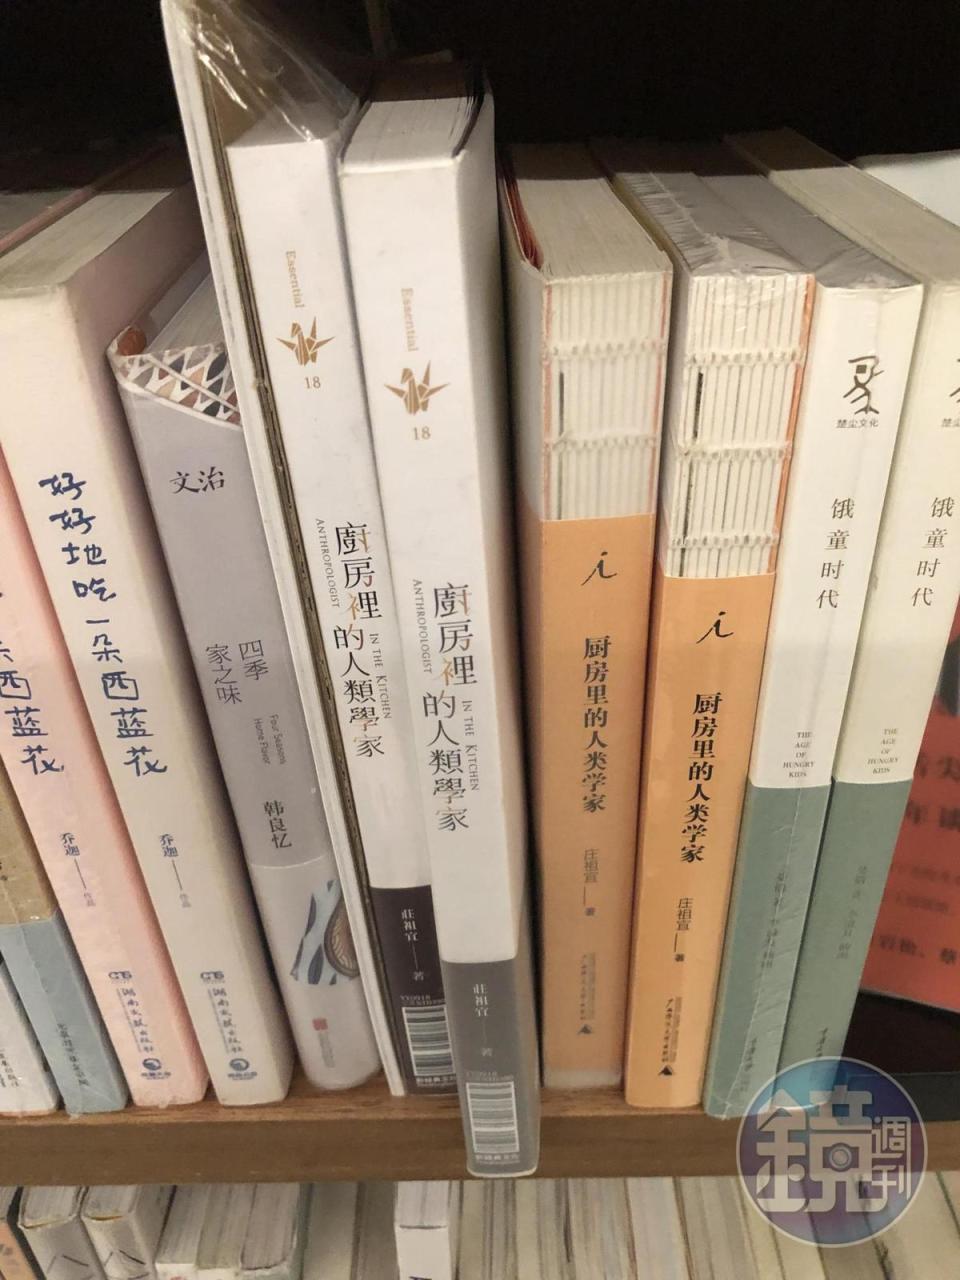 書店裡選了頗多台灣作家的書籍，目前住在成都的作家莊祖宜的著作，也占了一席之地。